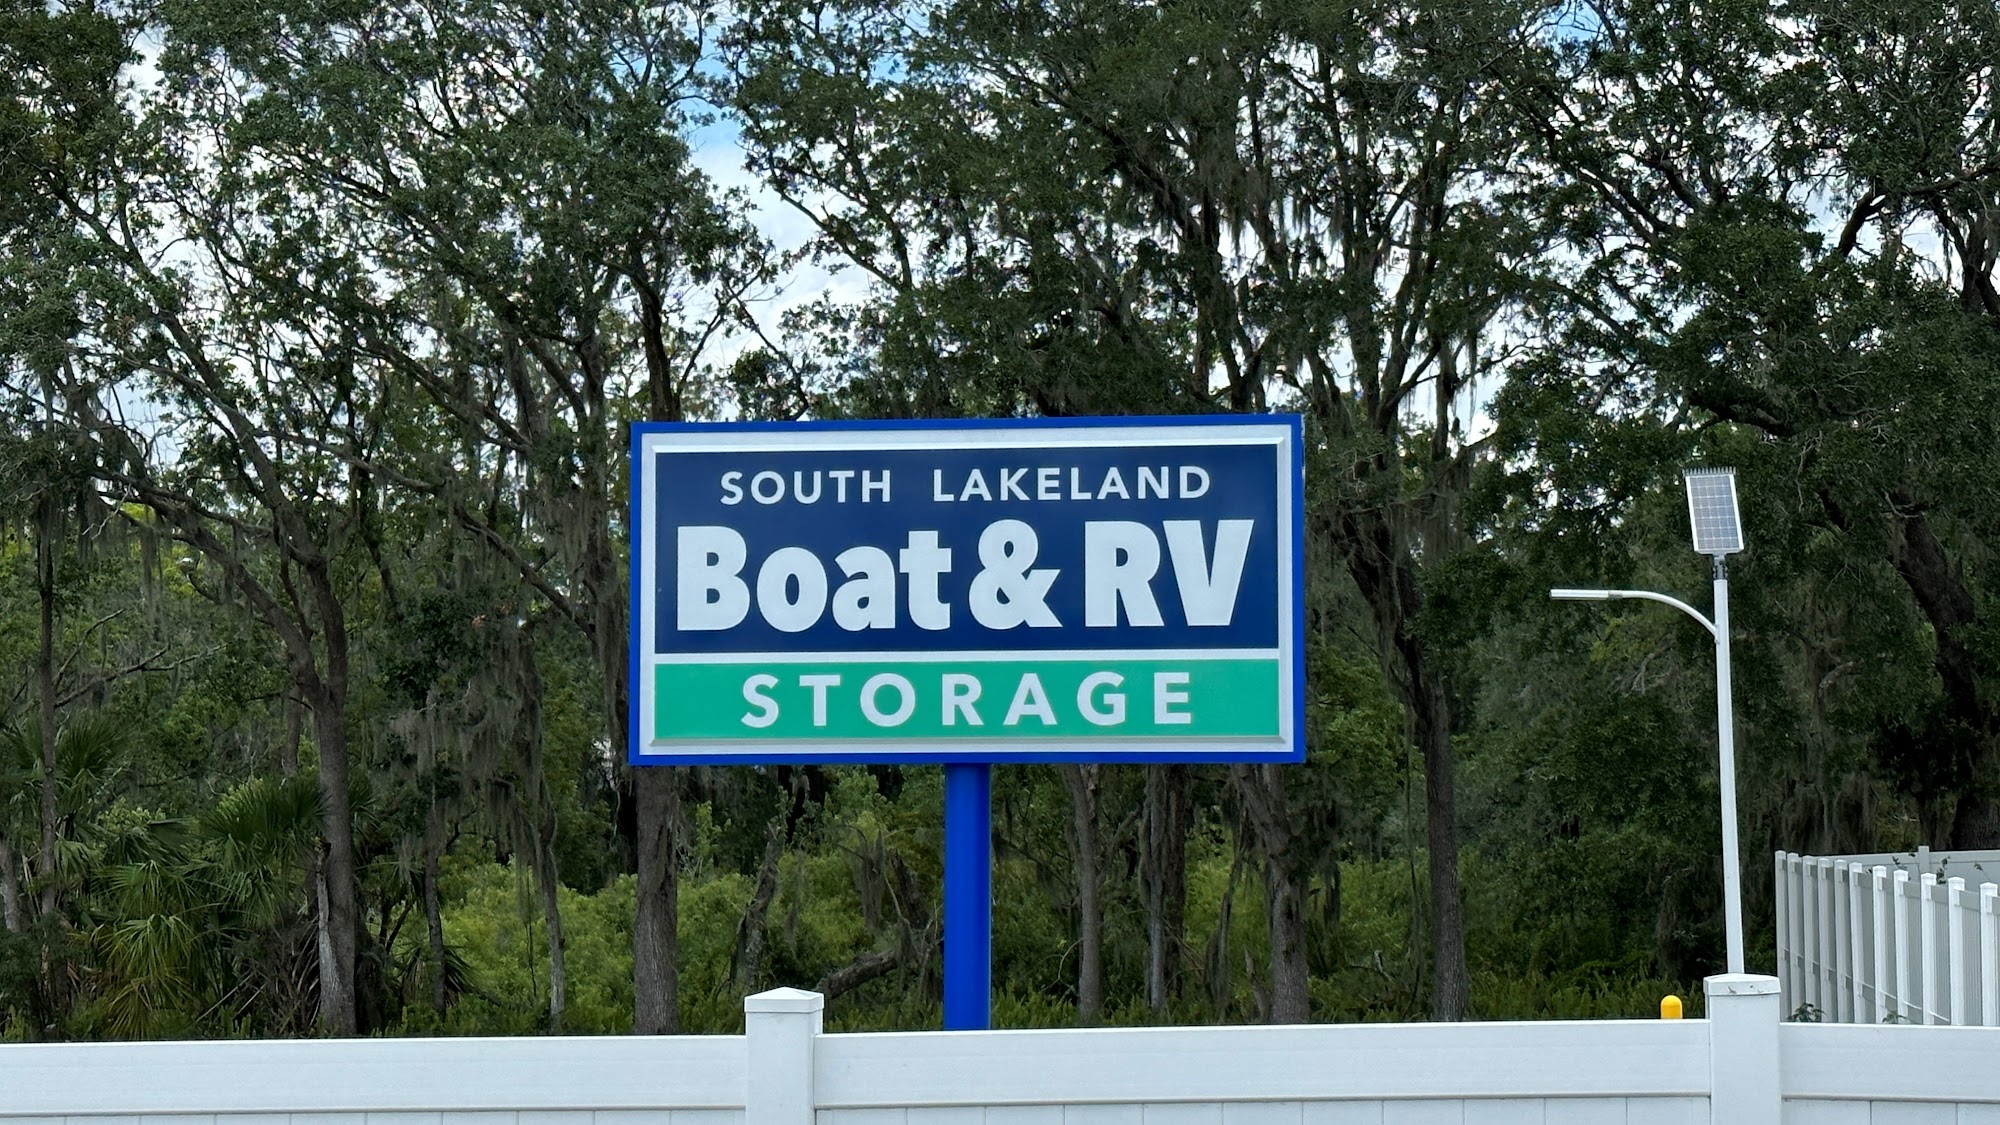 South Lakeland Boat & RV Storage